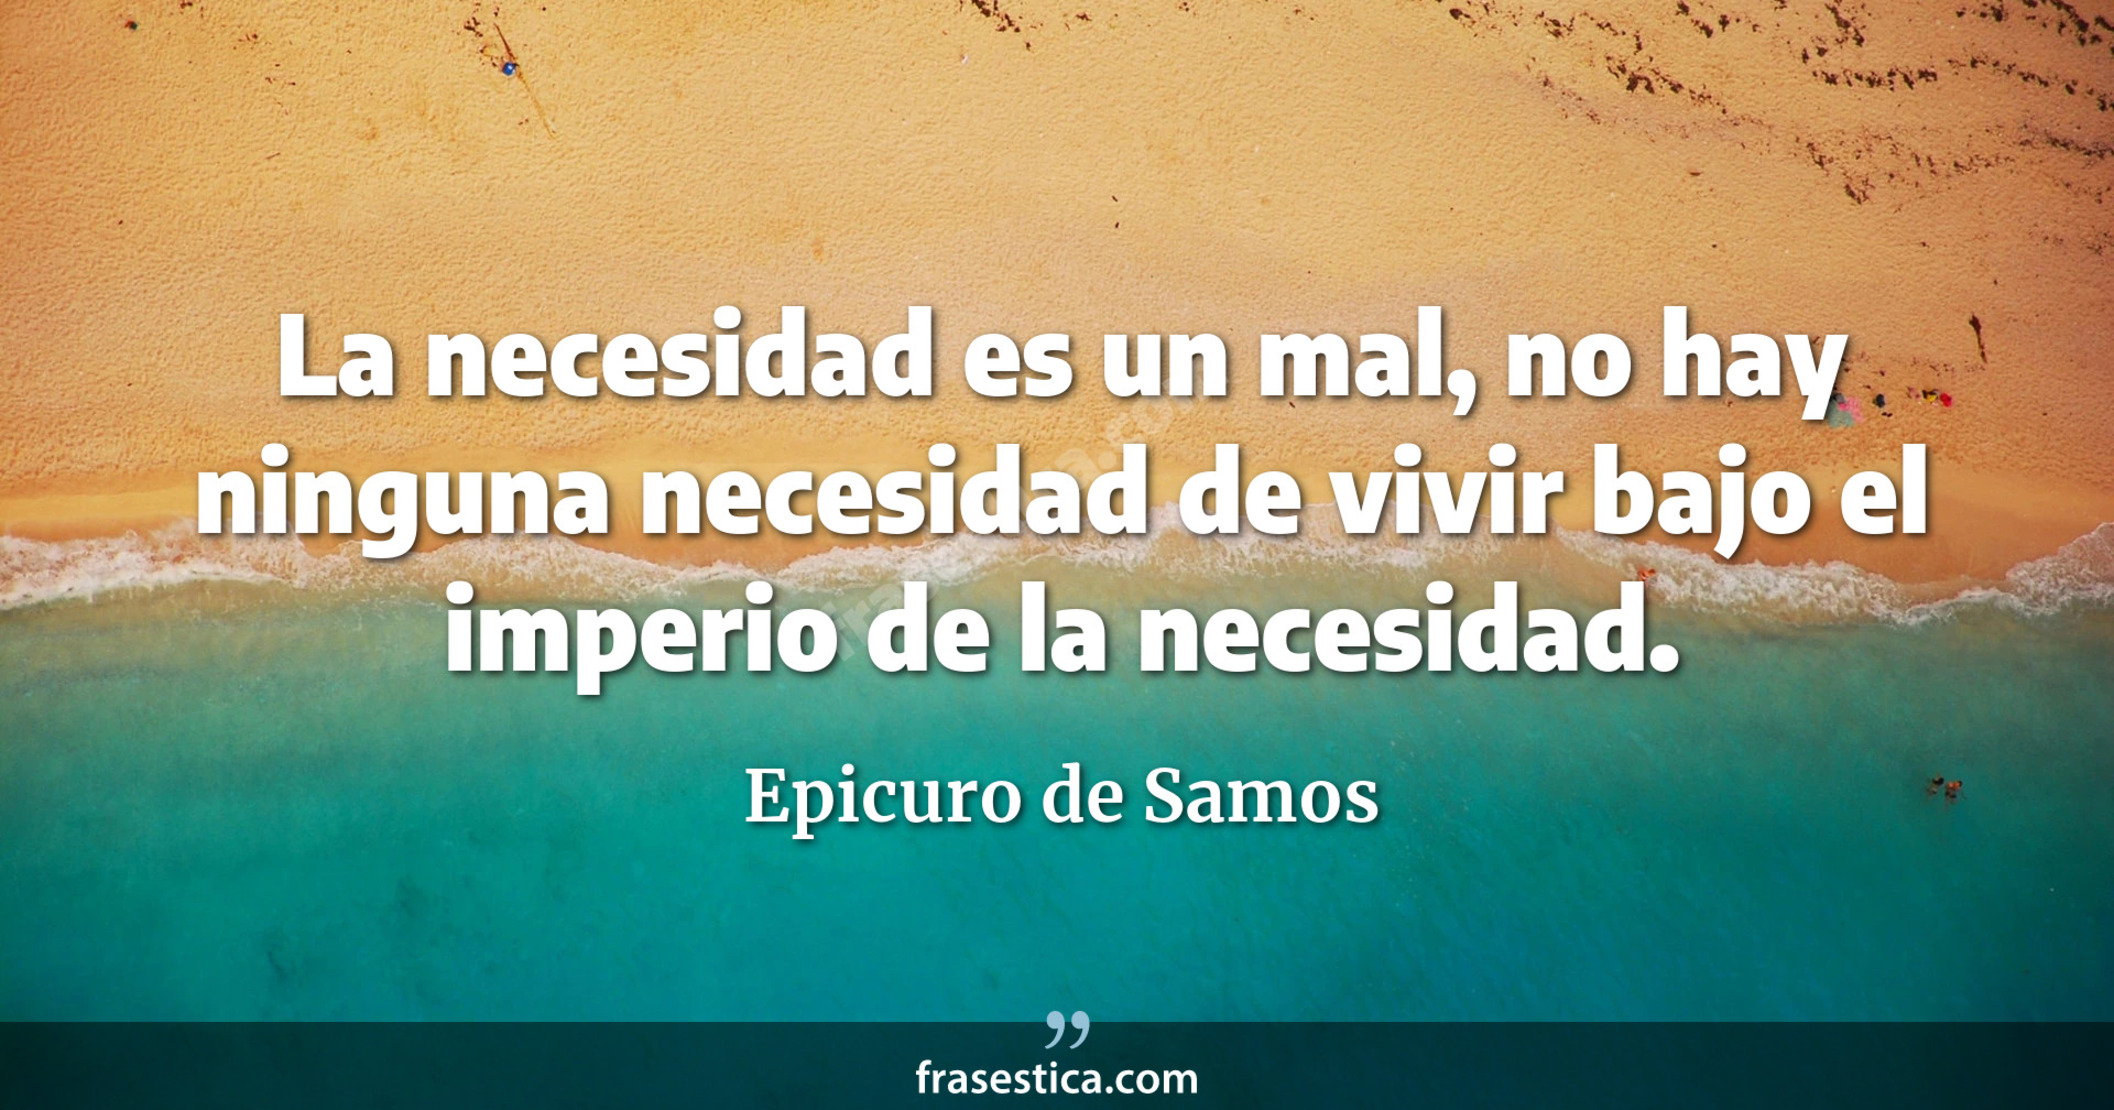 La necesidad es un mal, no hay ninguna necesidad de vivir bajo el imperio de la necesidad. - Epicuro de Samos